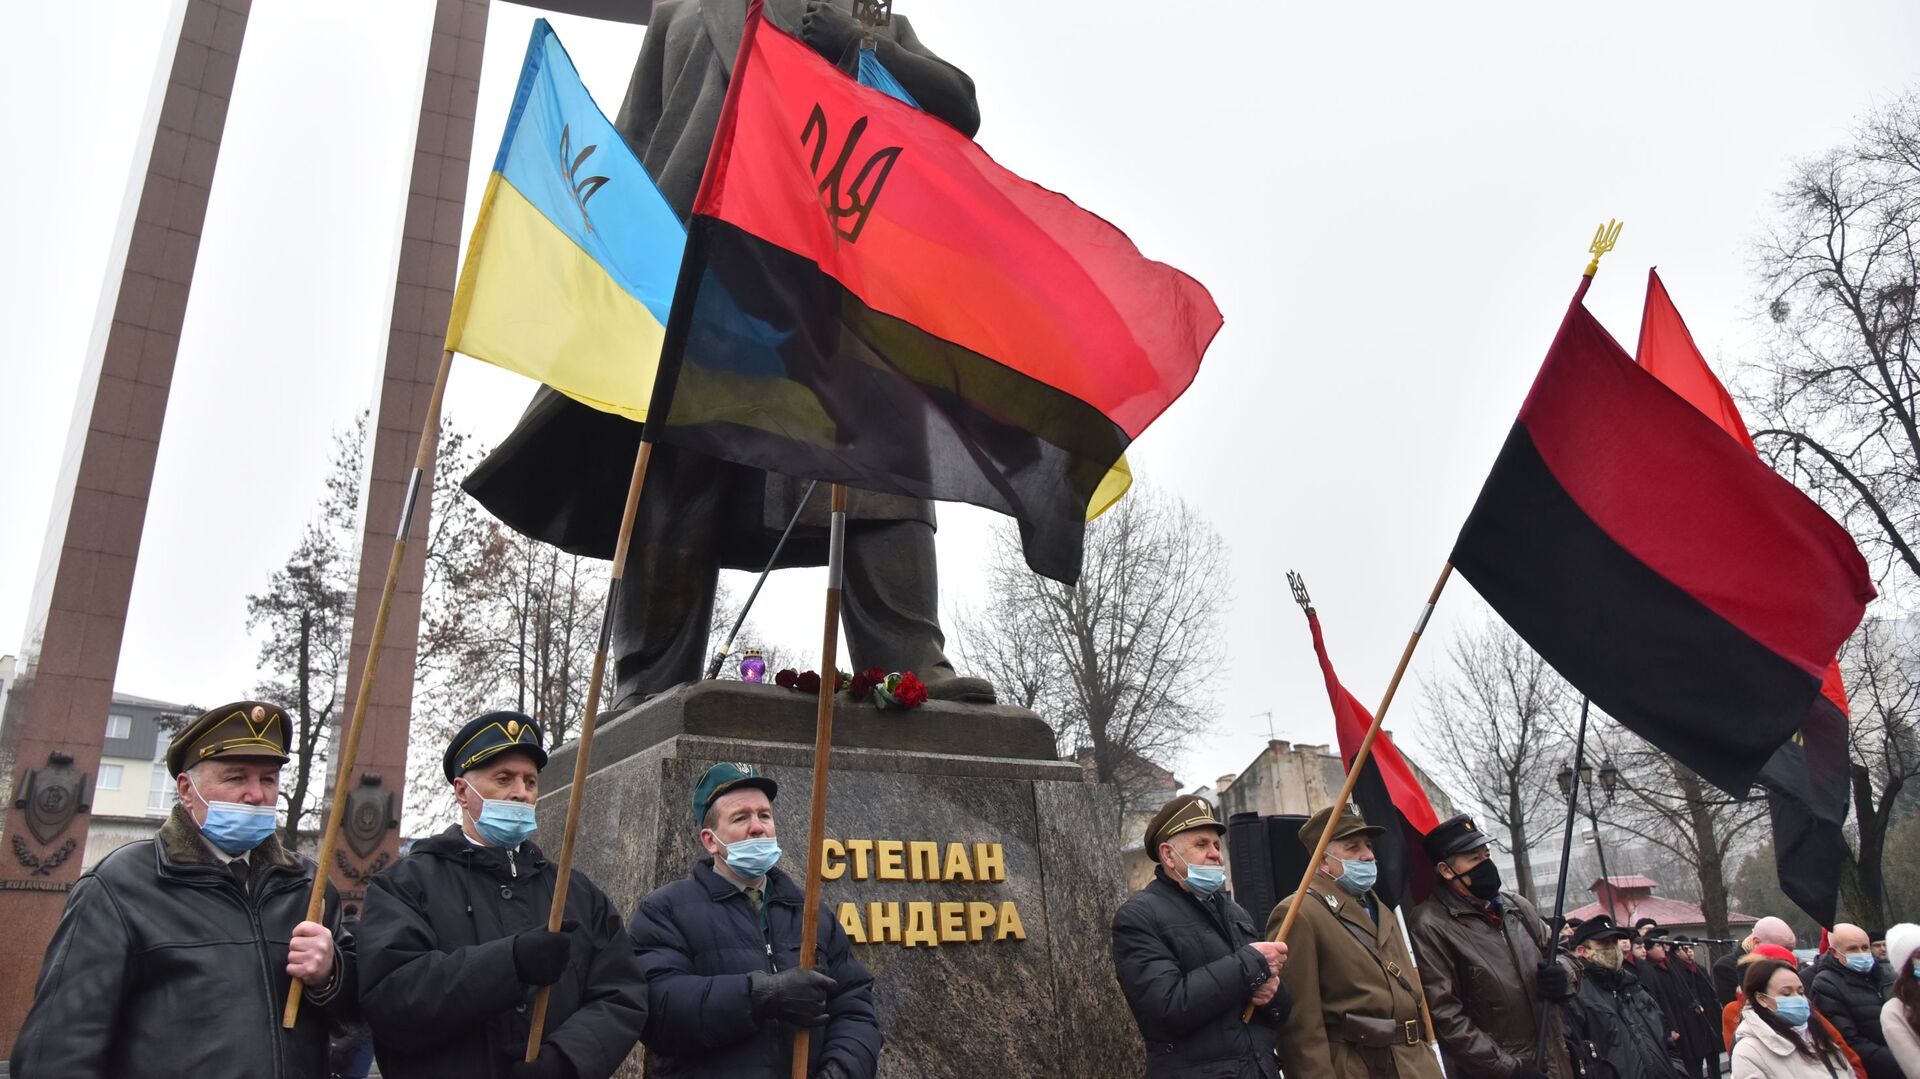 Nationalist marches in Ukraine - Sputnik International, 1920, 06.02.2021